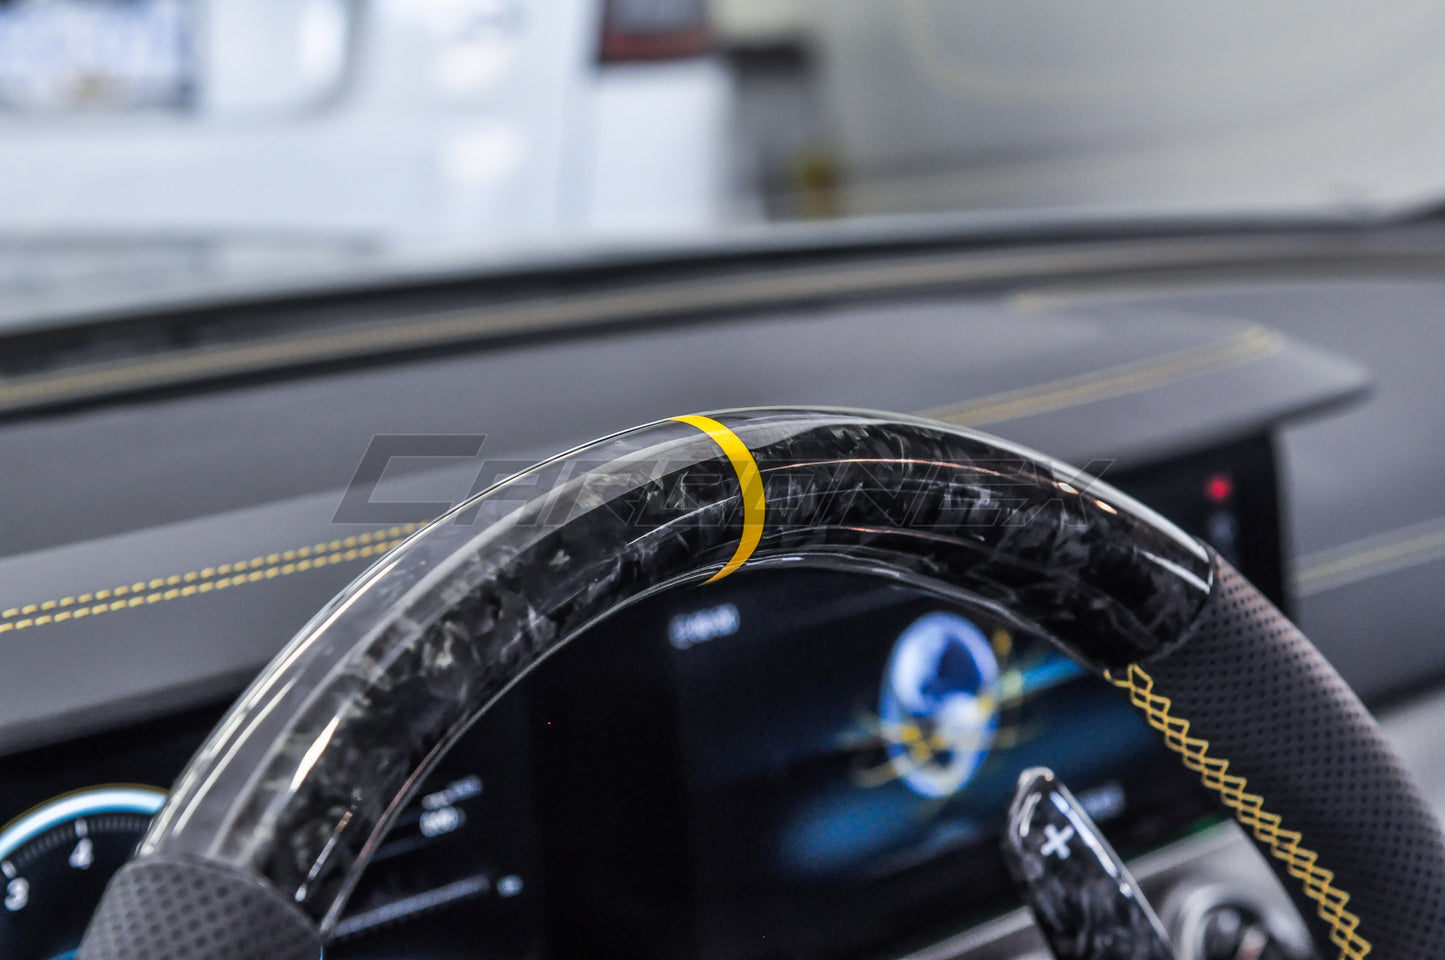 Bespoke Steering Wheel | Mercedes Benz | AMG V2 Models